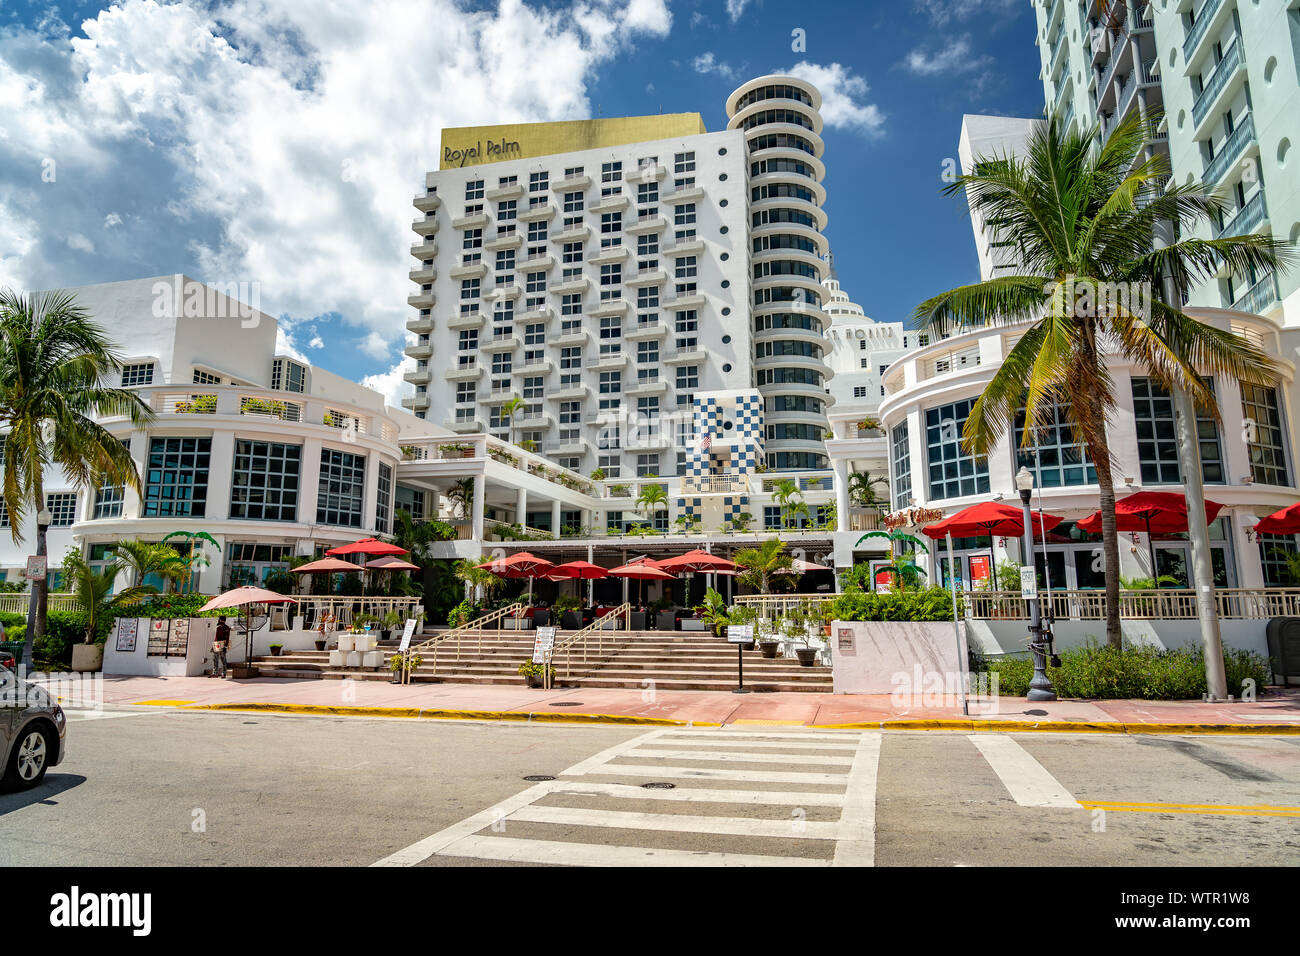 Miami Beach, Floride, USA - bâtiments de l'hôtel dans la région de South Beach precinct Banque D'Images